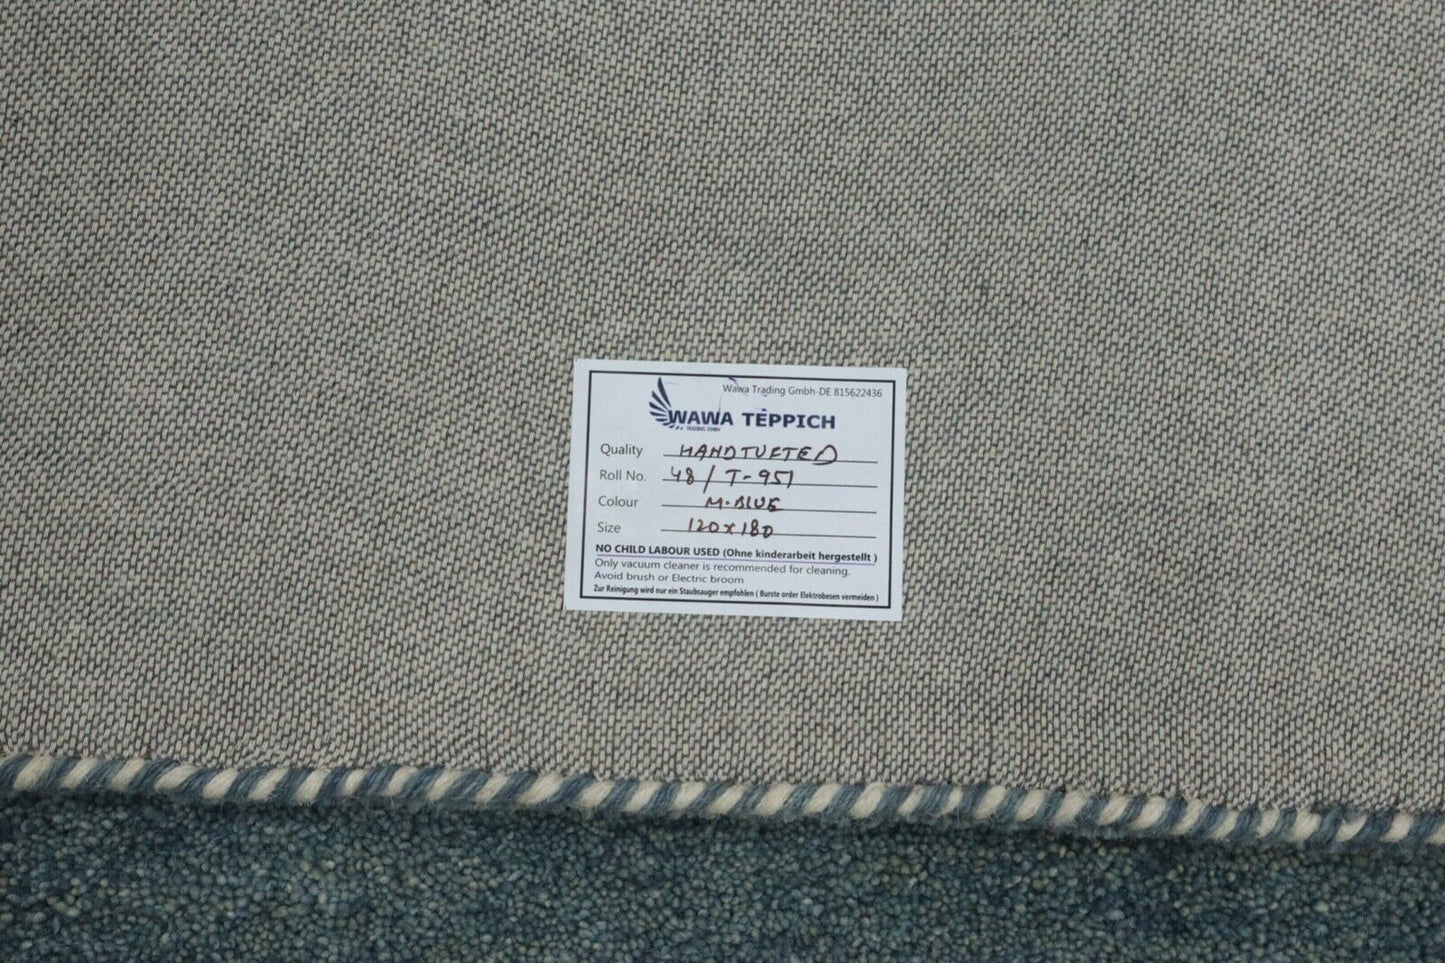 Uni Grau Teppich 100% Wolle 120X180 cm Handarbeit Handgetuftet T951